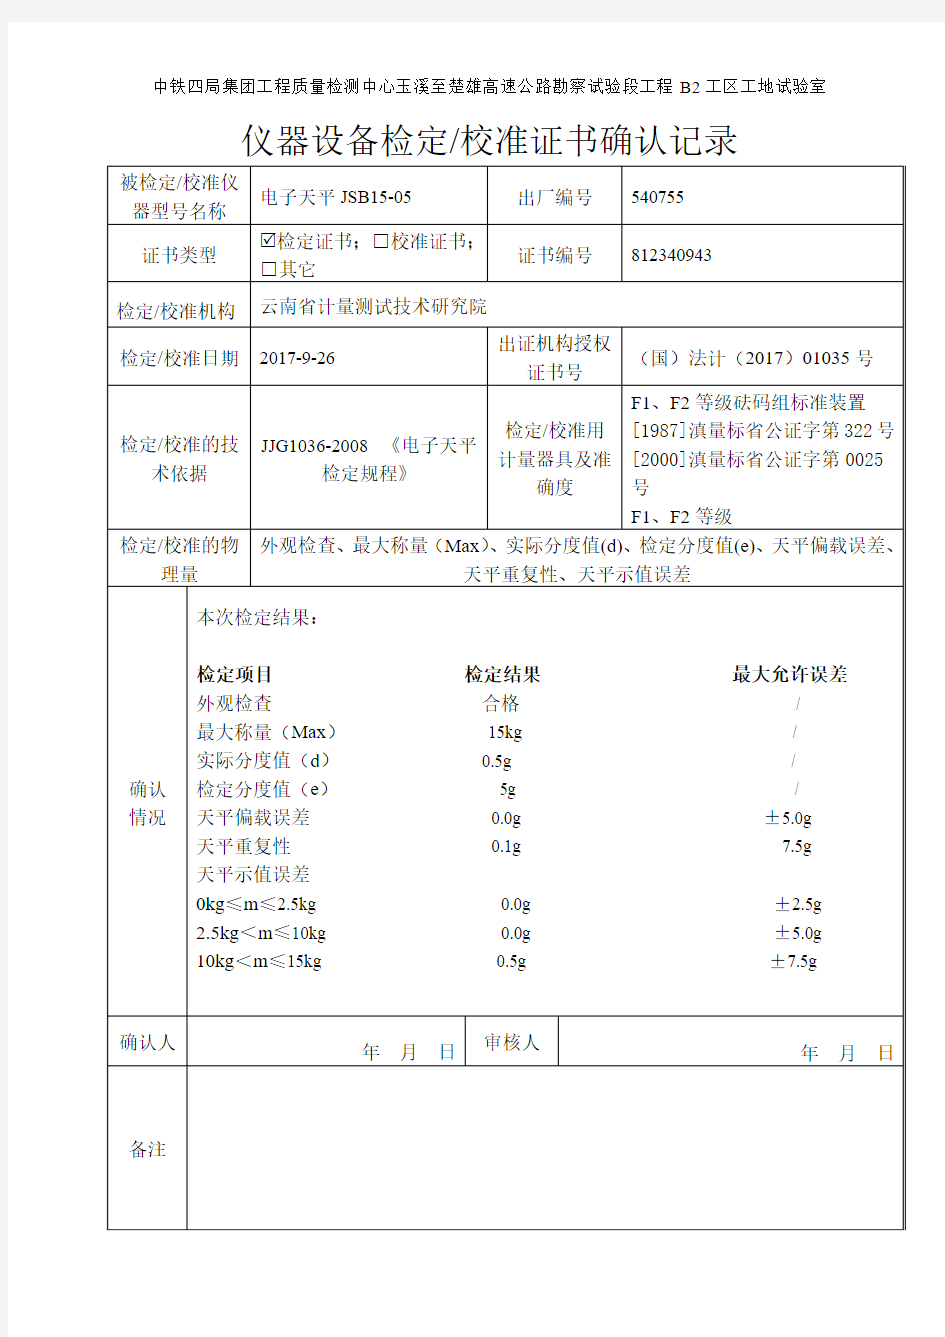 电子天平-15kg 0.5g仪器设备测试(校准)证书确认记录